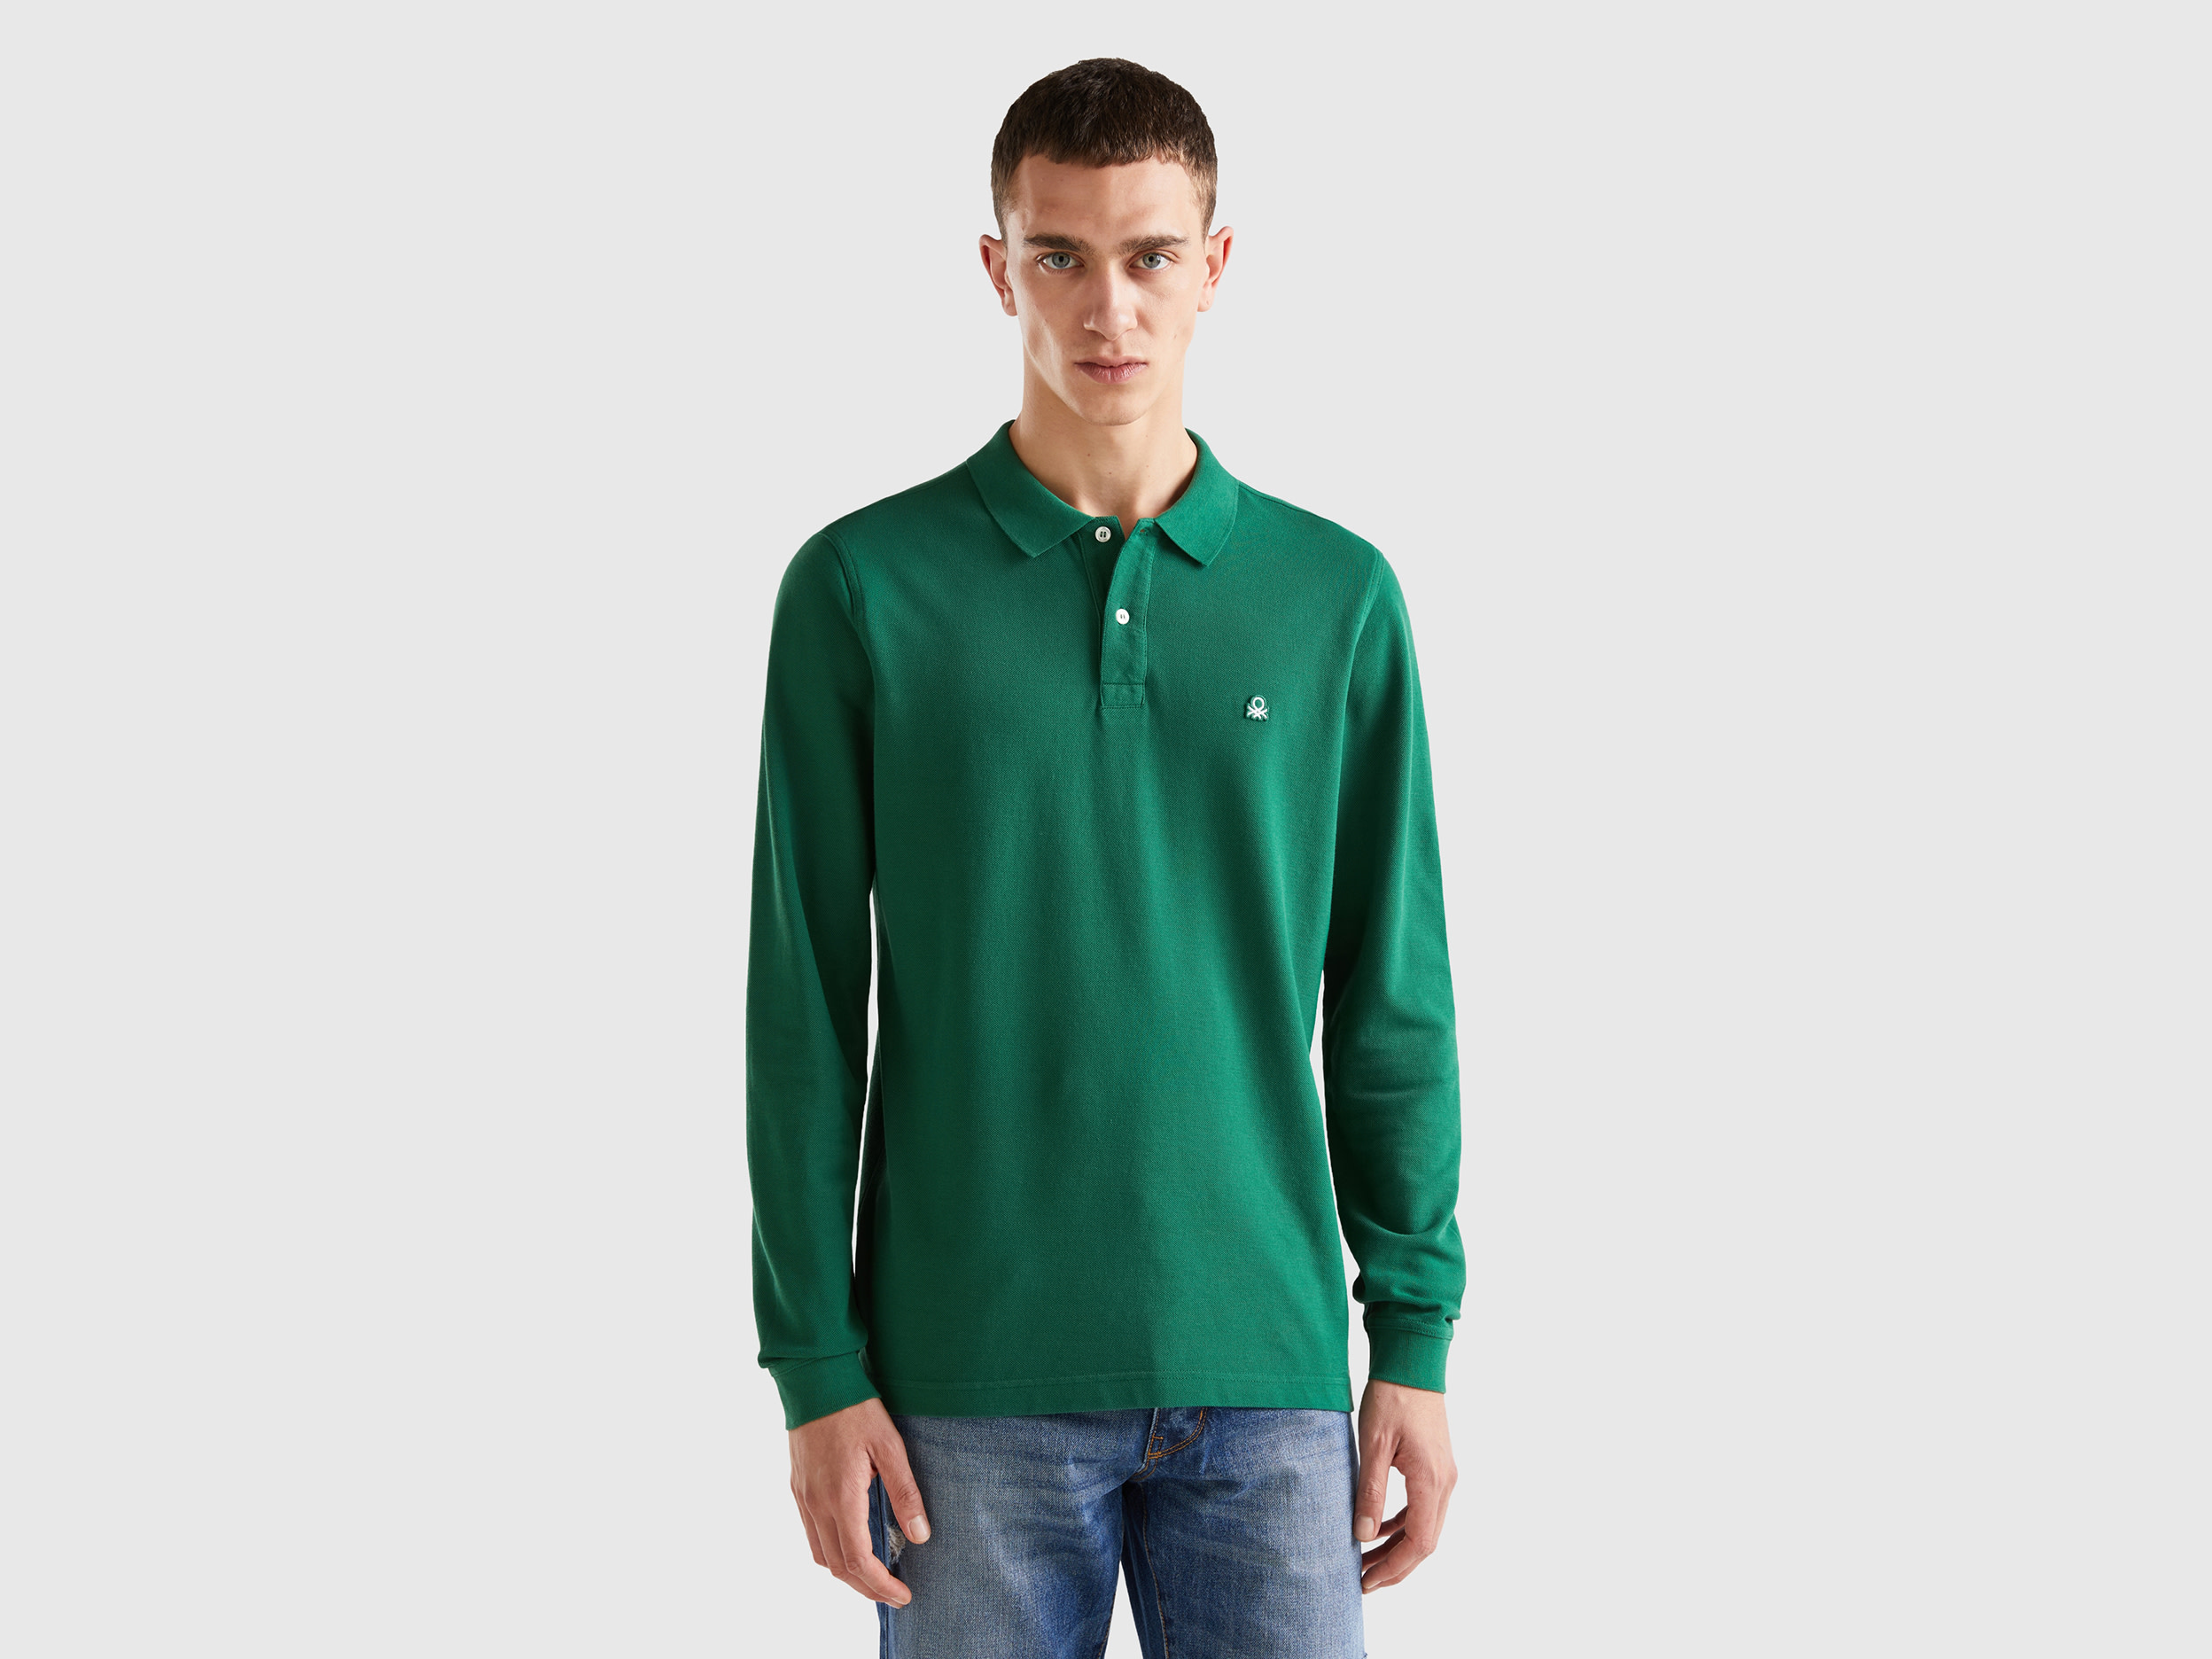 Benetton, Long Sleeve 100% Cotton Polo, size XXXL, Dark Green, Men